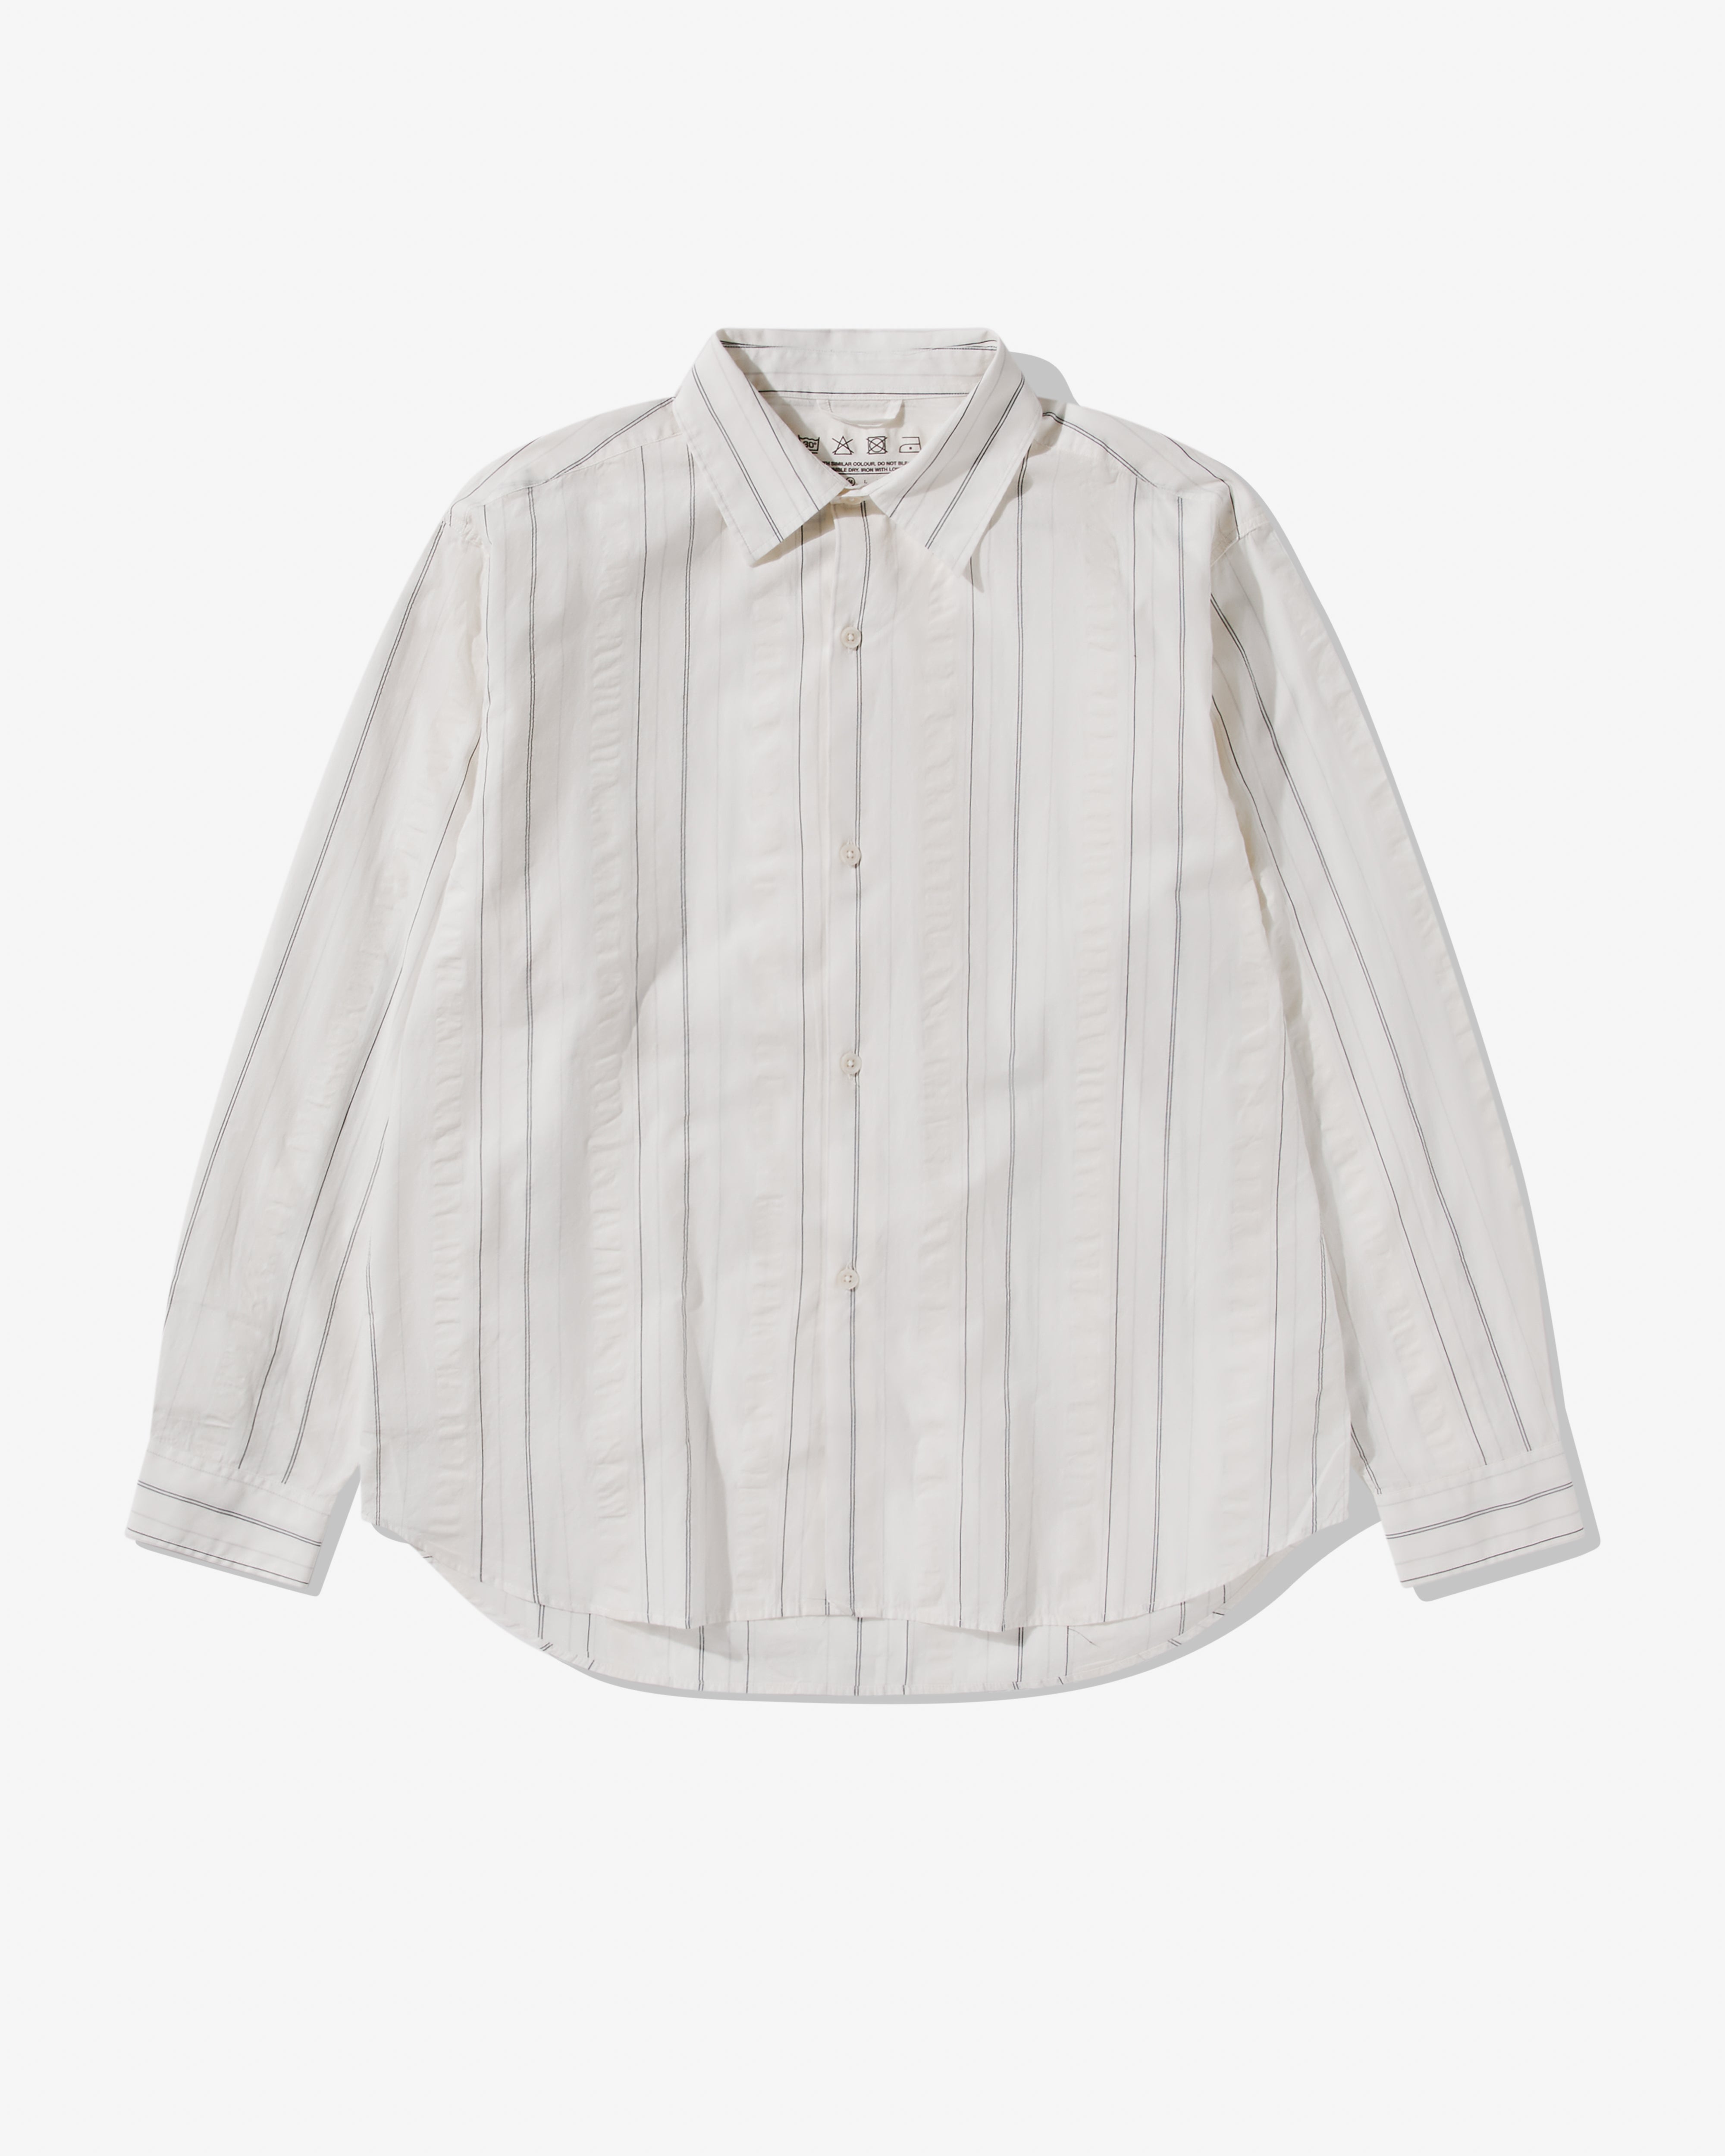 Mfpen - Men's Generous Shirt - (White Stripe) | Dover Street Market 